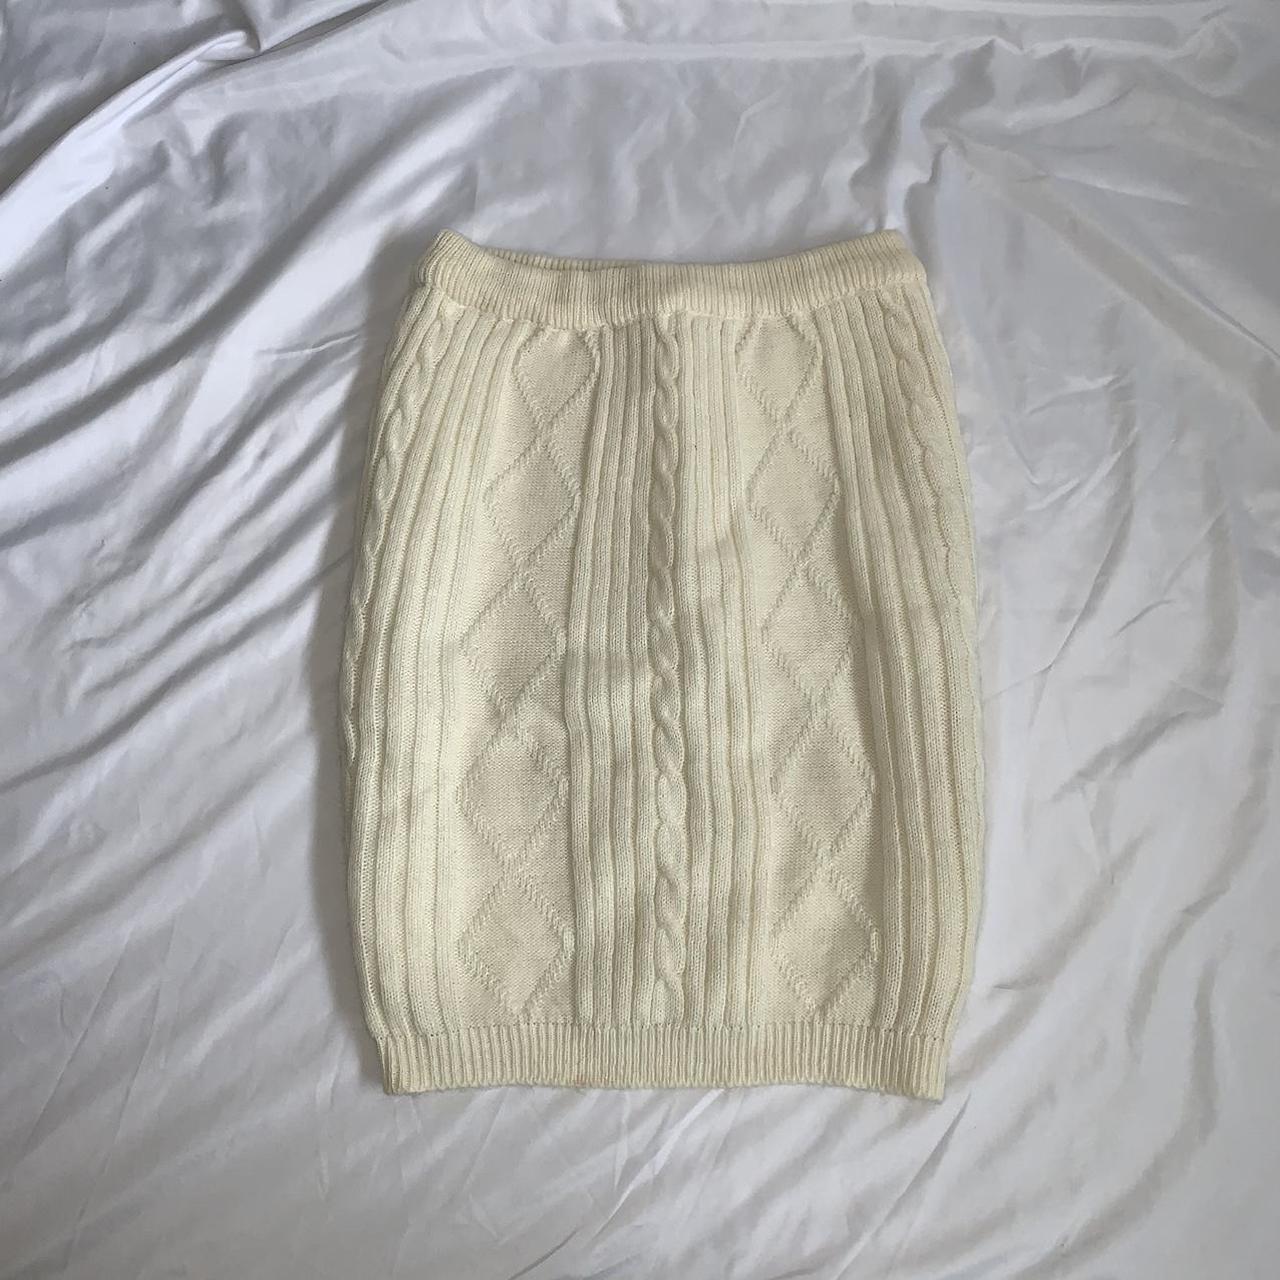 Vintage cream Knit skirt with interior slip Waist... - Depop